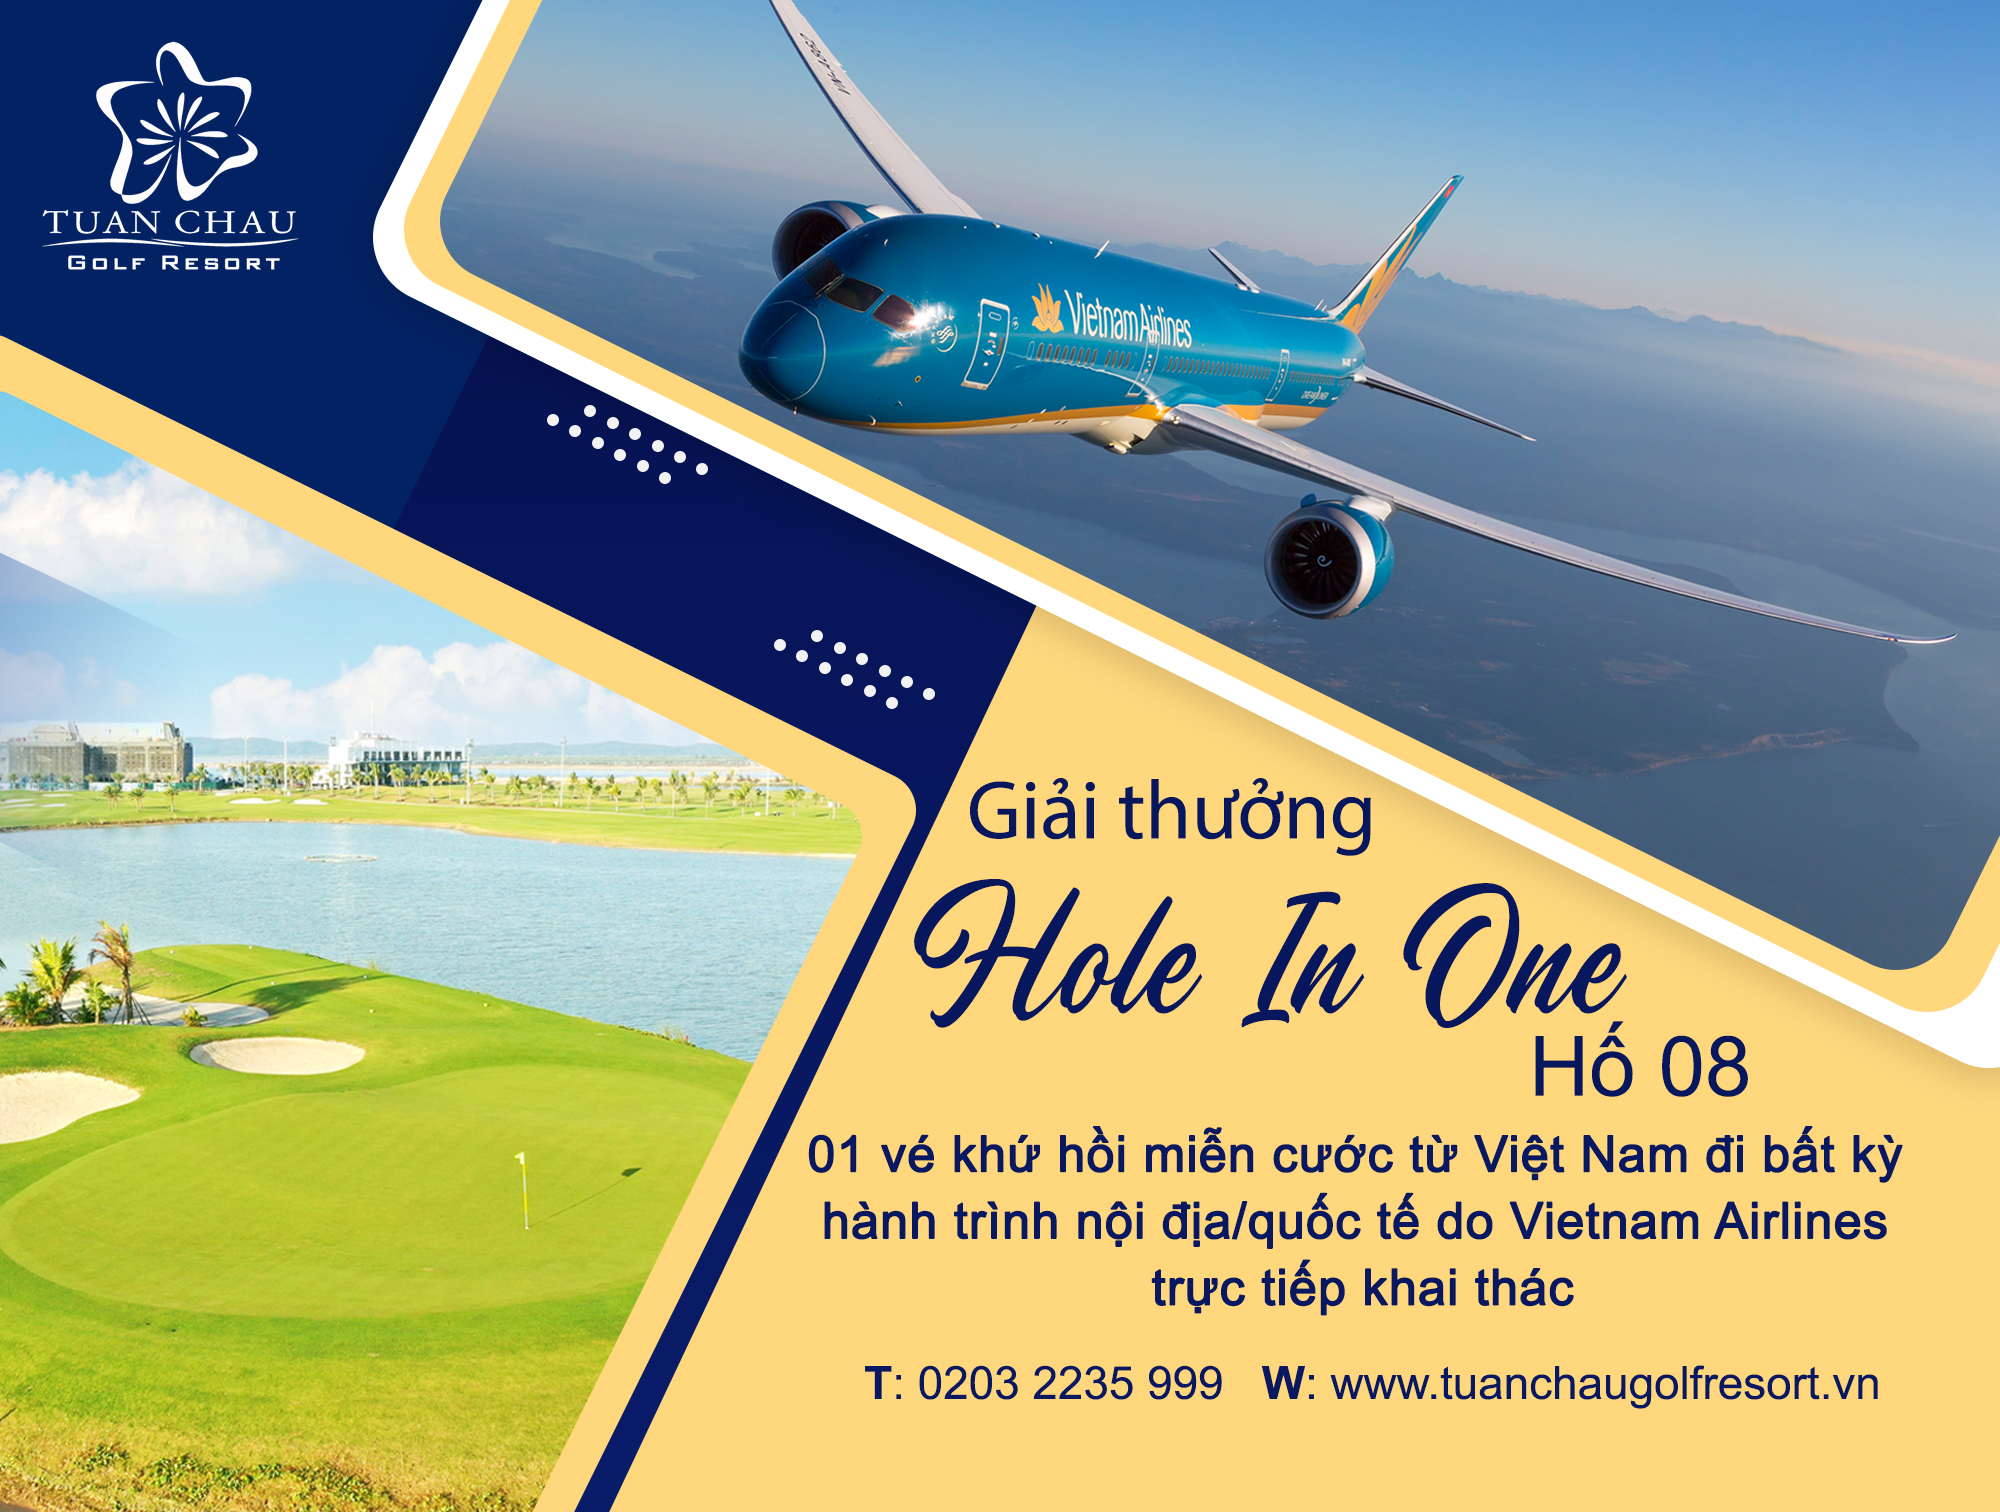 Vietnam Airlines đồng hành cùng Sân golf Tuần Châu trao giải thưởng HIO tại hố số 8